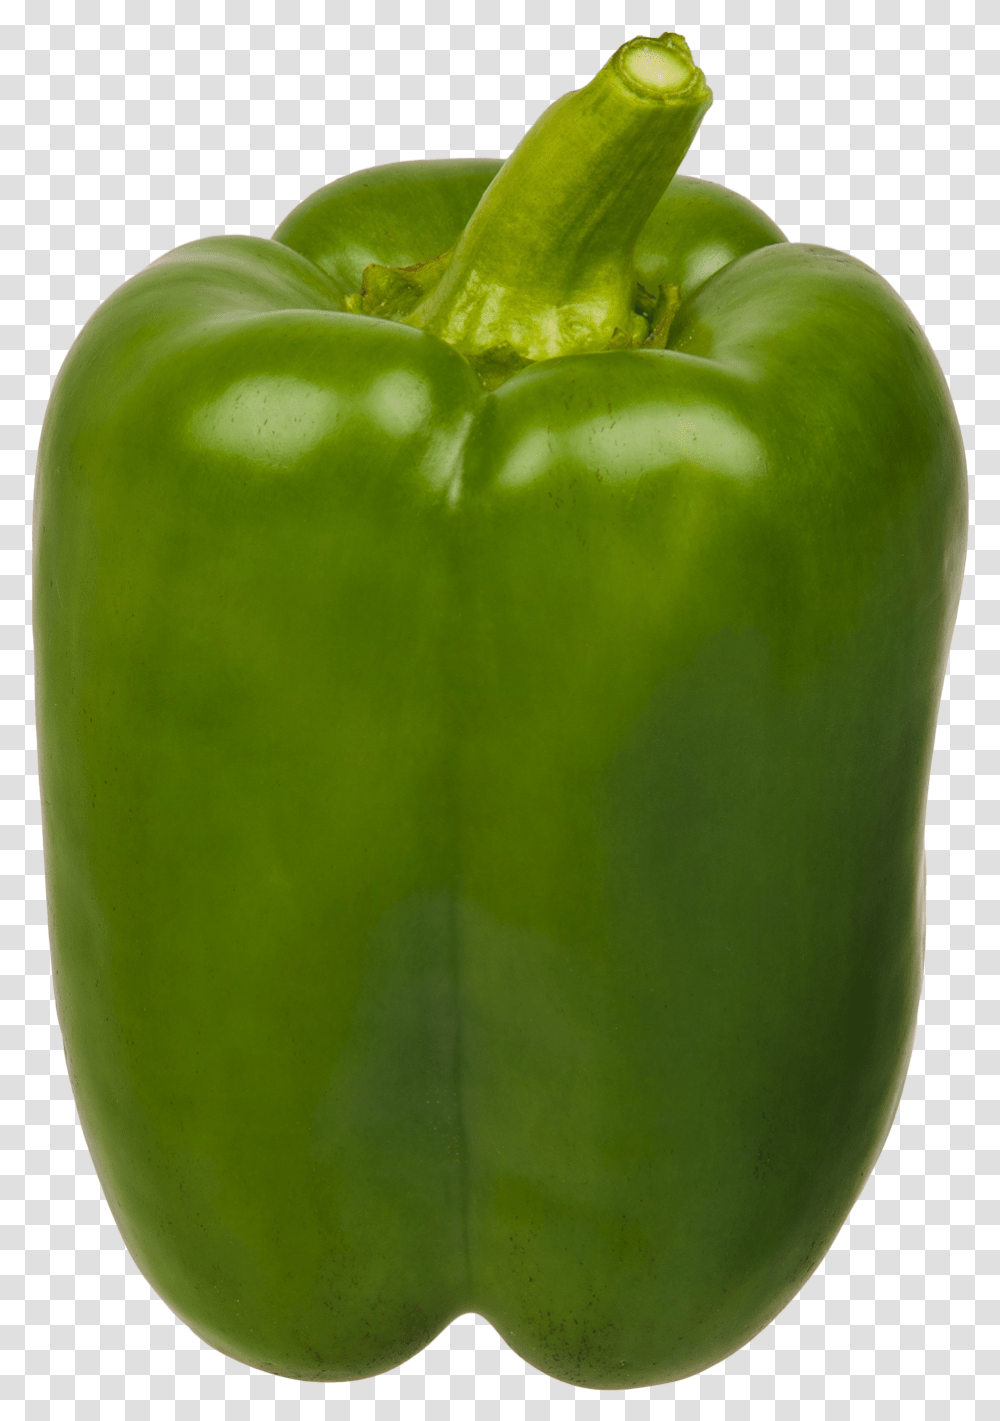 Backgrounds Impressive Green Bell Pepper, Plant, Vegetable, Food, Apple Transparent Png